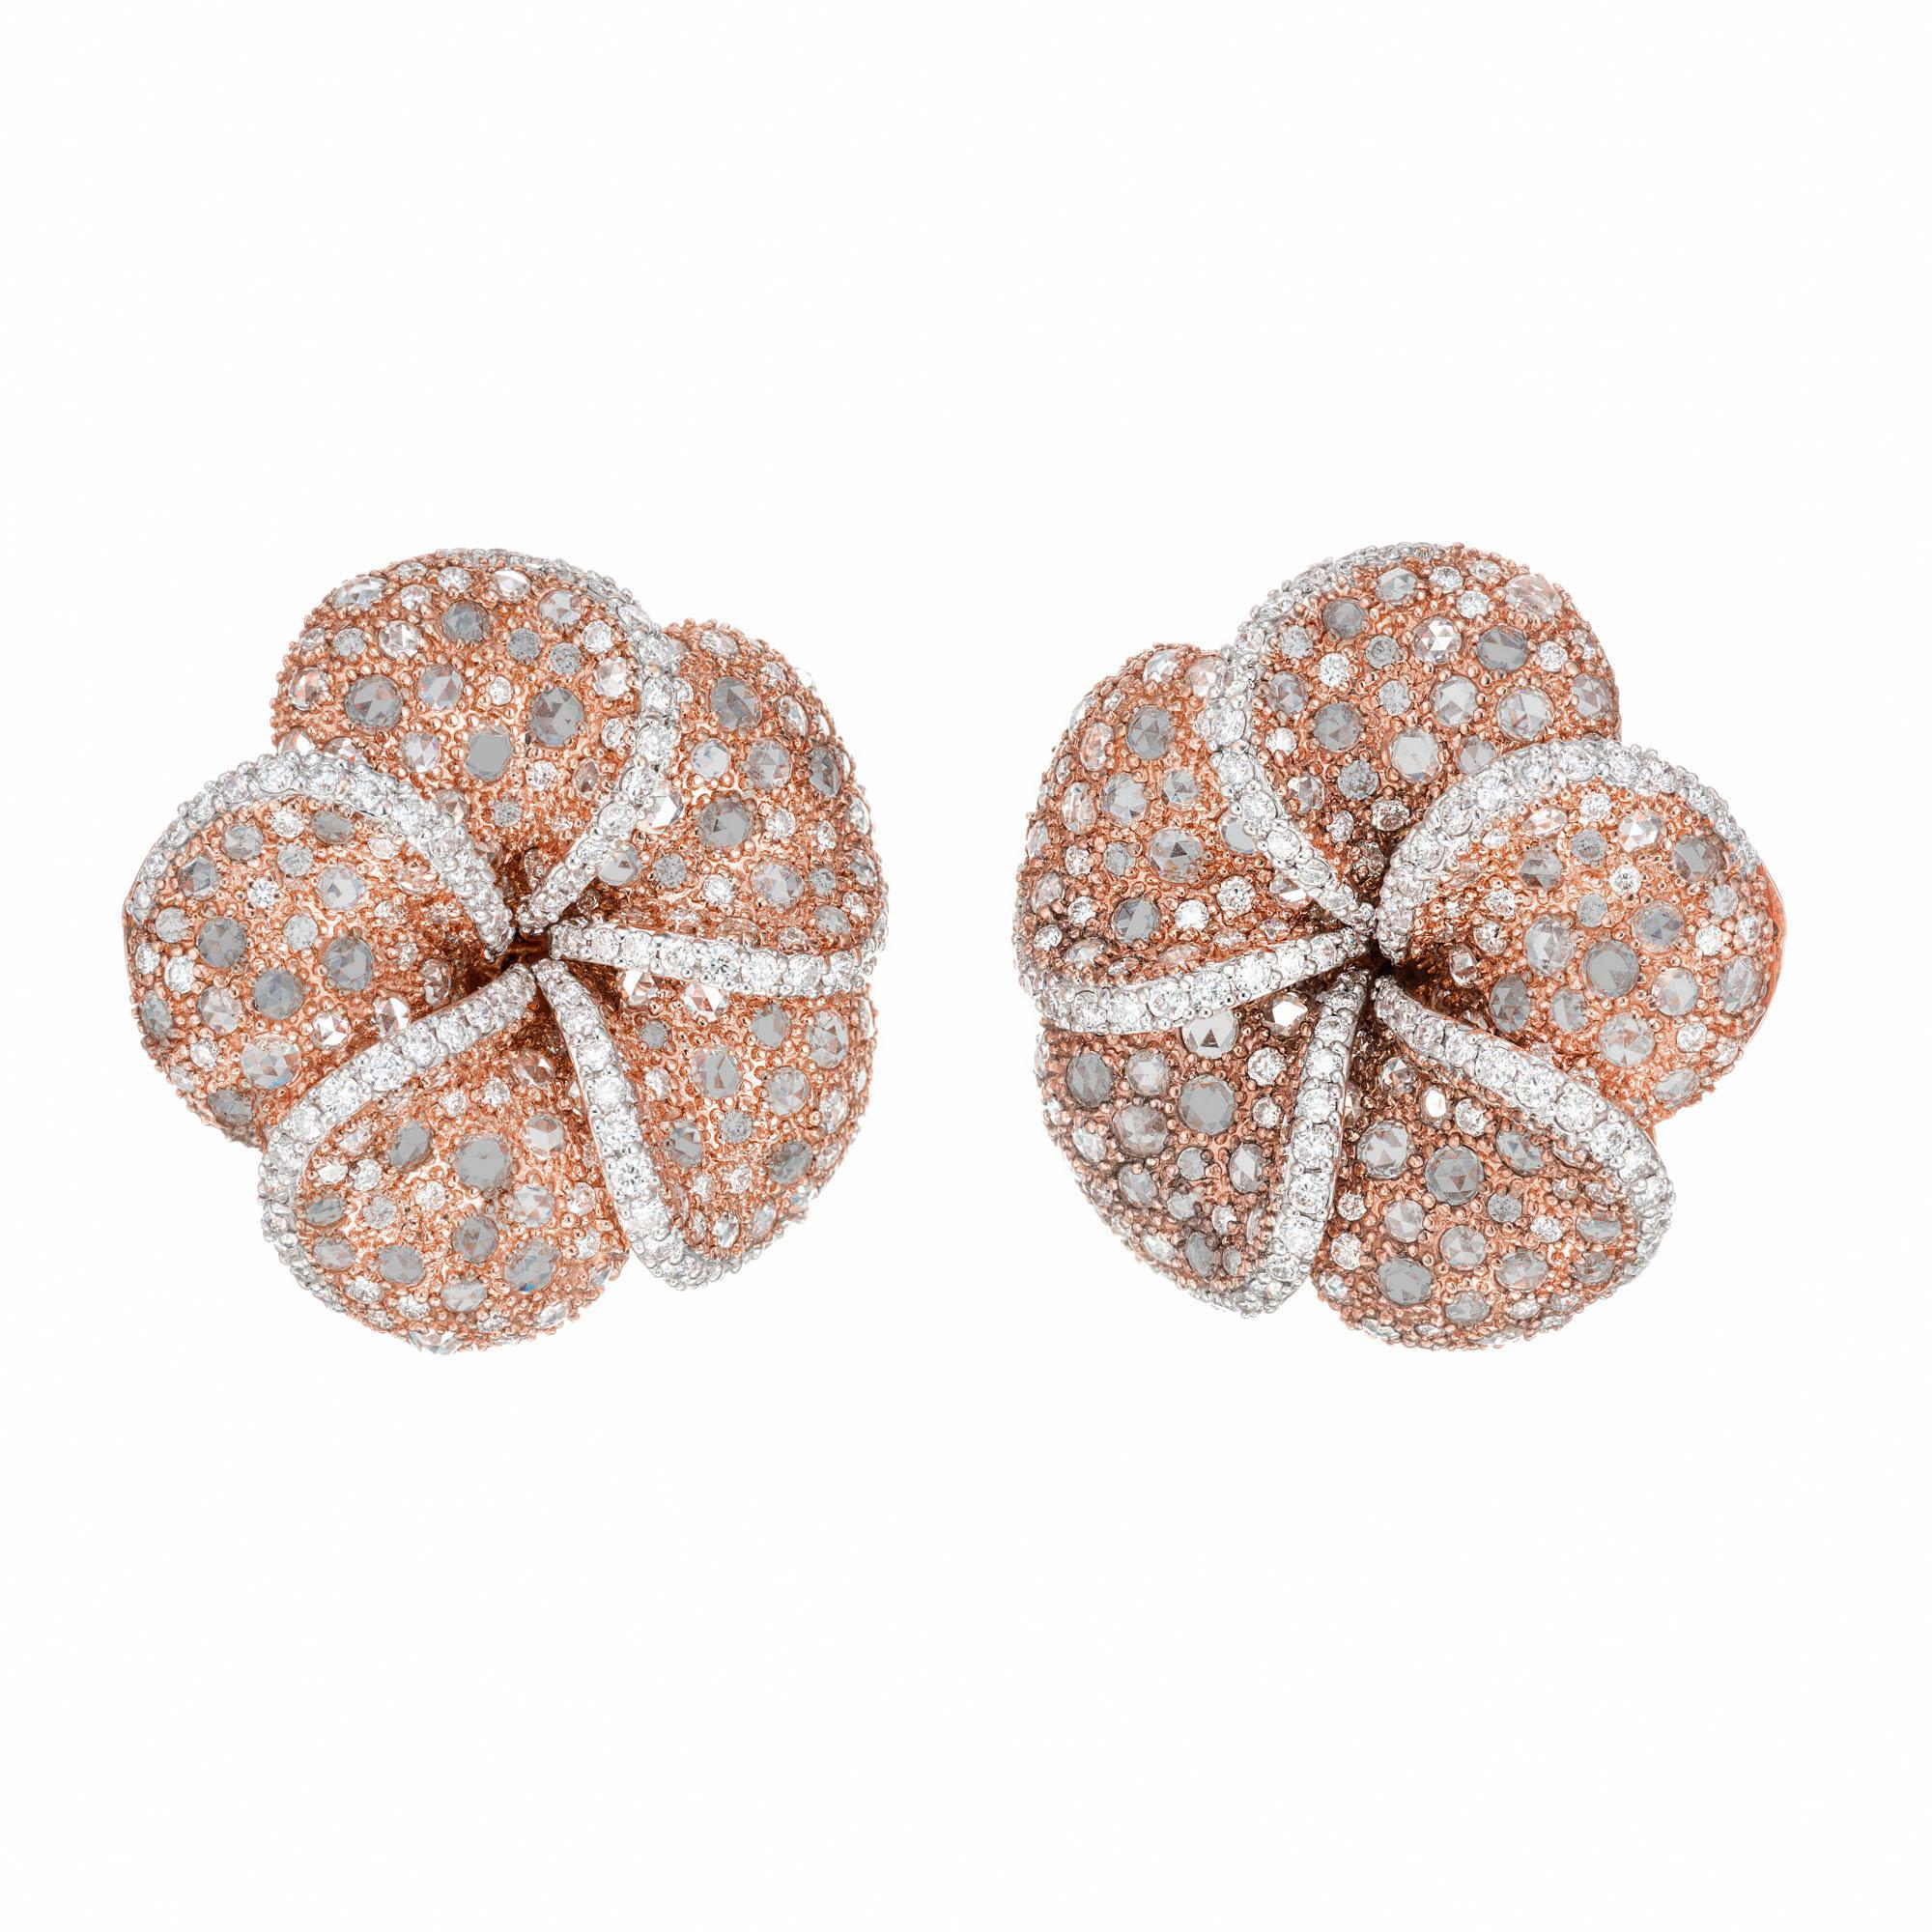 Kunstvoll gefertigte Diamant-Cluster-Clip-Post-Ohrringe. 150 runde Diamanten im Brillantschliff mit 350 runden und rosa geschliffenen natürlichen kaffeefarbenen Diamanten in 18 Karat Roségold-Blumenfassungen mit 18 Karat gelben Rückfassungen